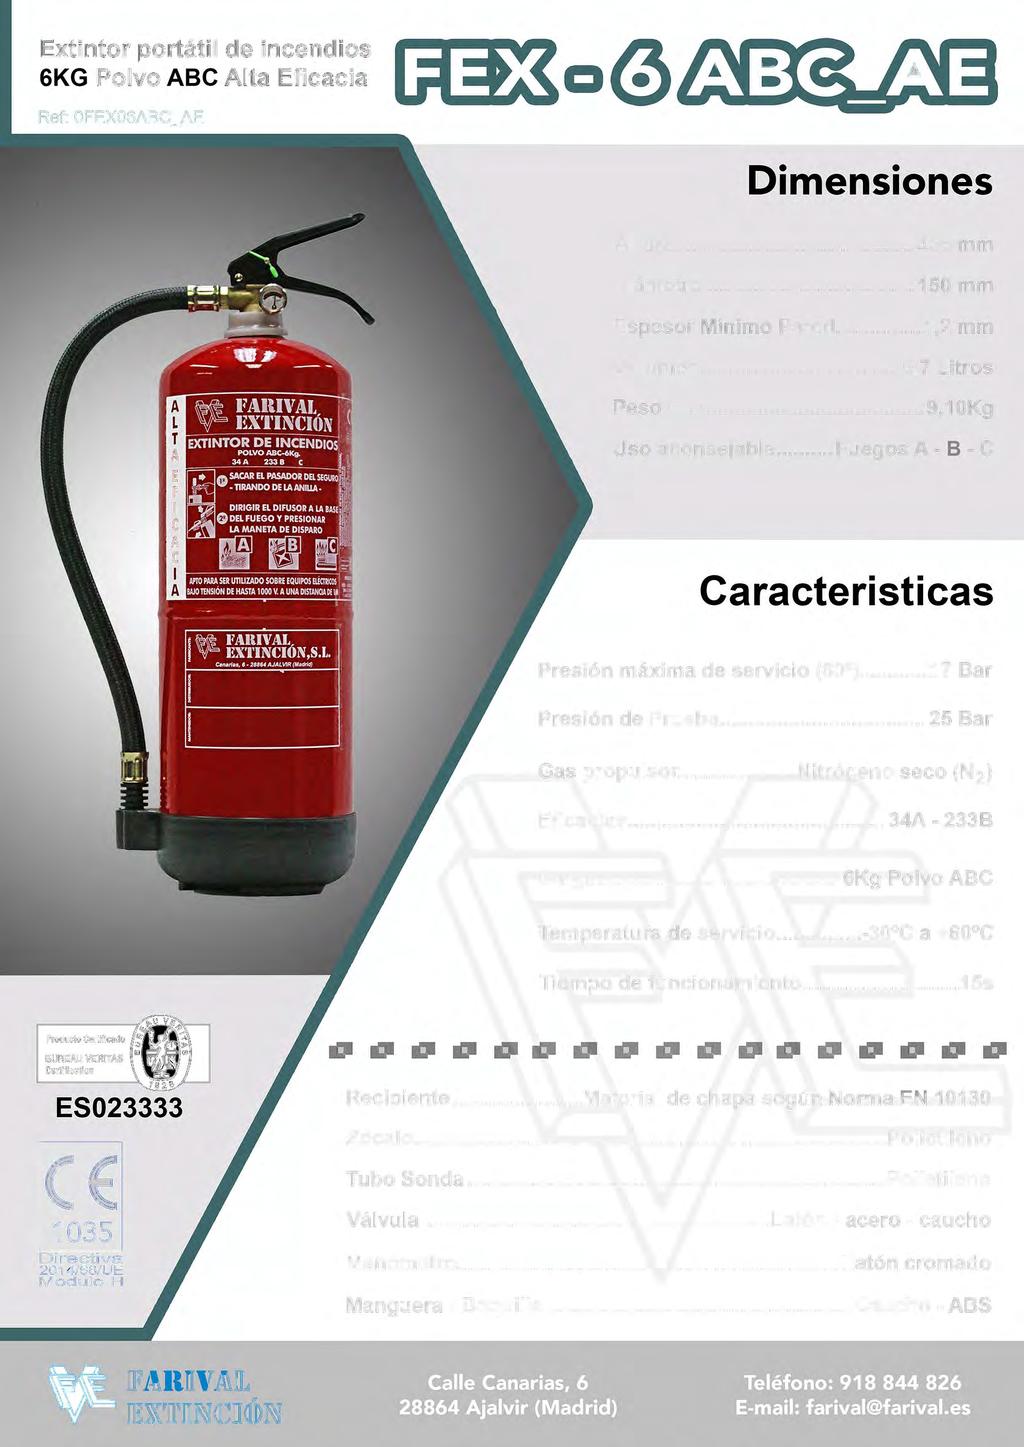 Extintor portátil de incendios 6KG Polvo ABC Alta Eficacia Ref: 0FEX06ABC_AE Dimensiones Altura... 435 mm Diámetro.